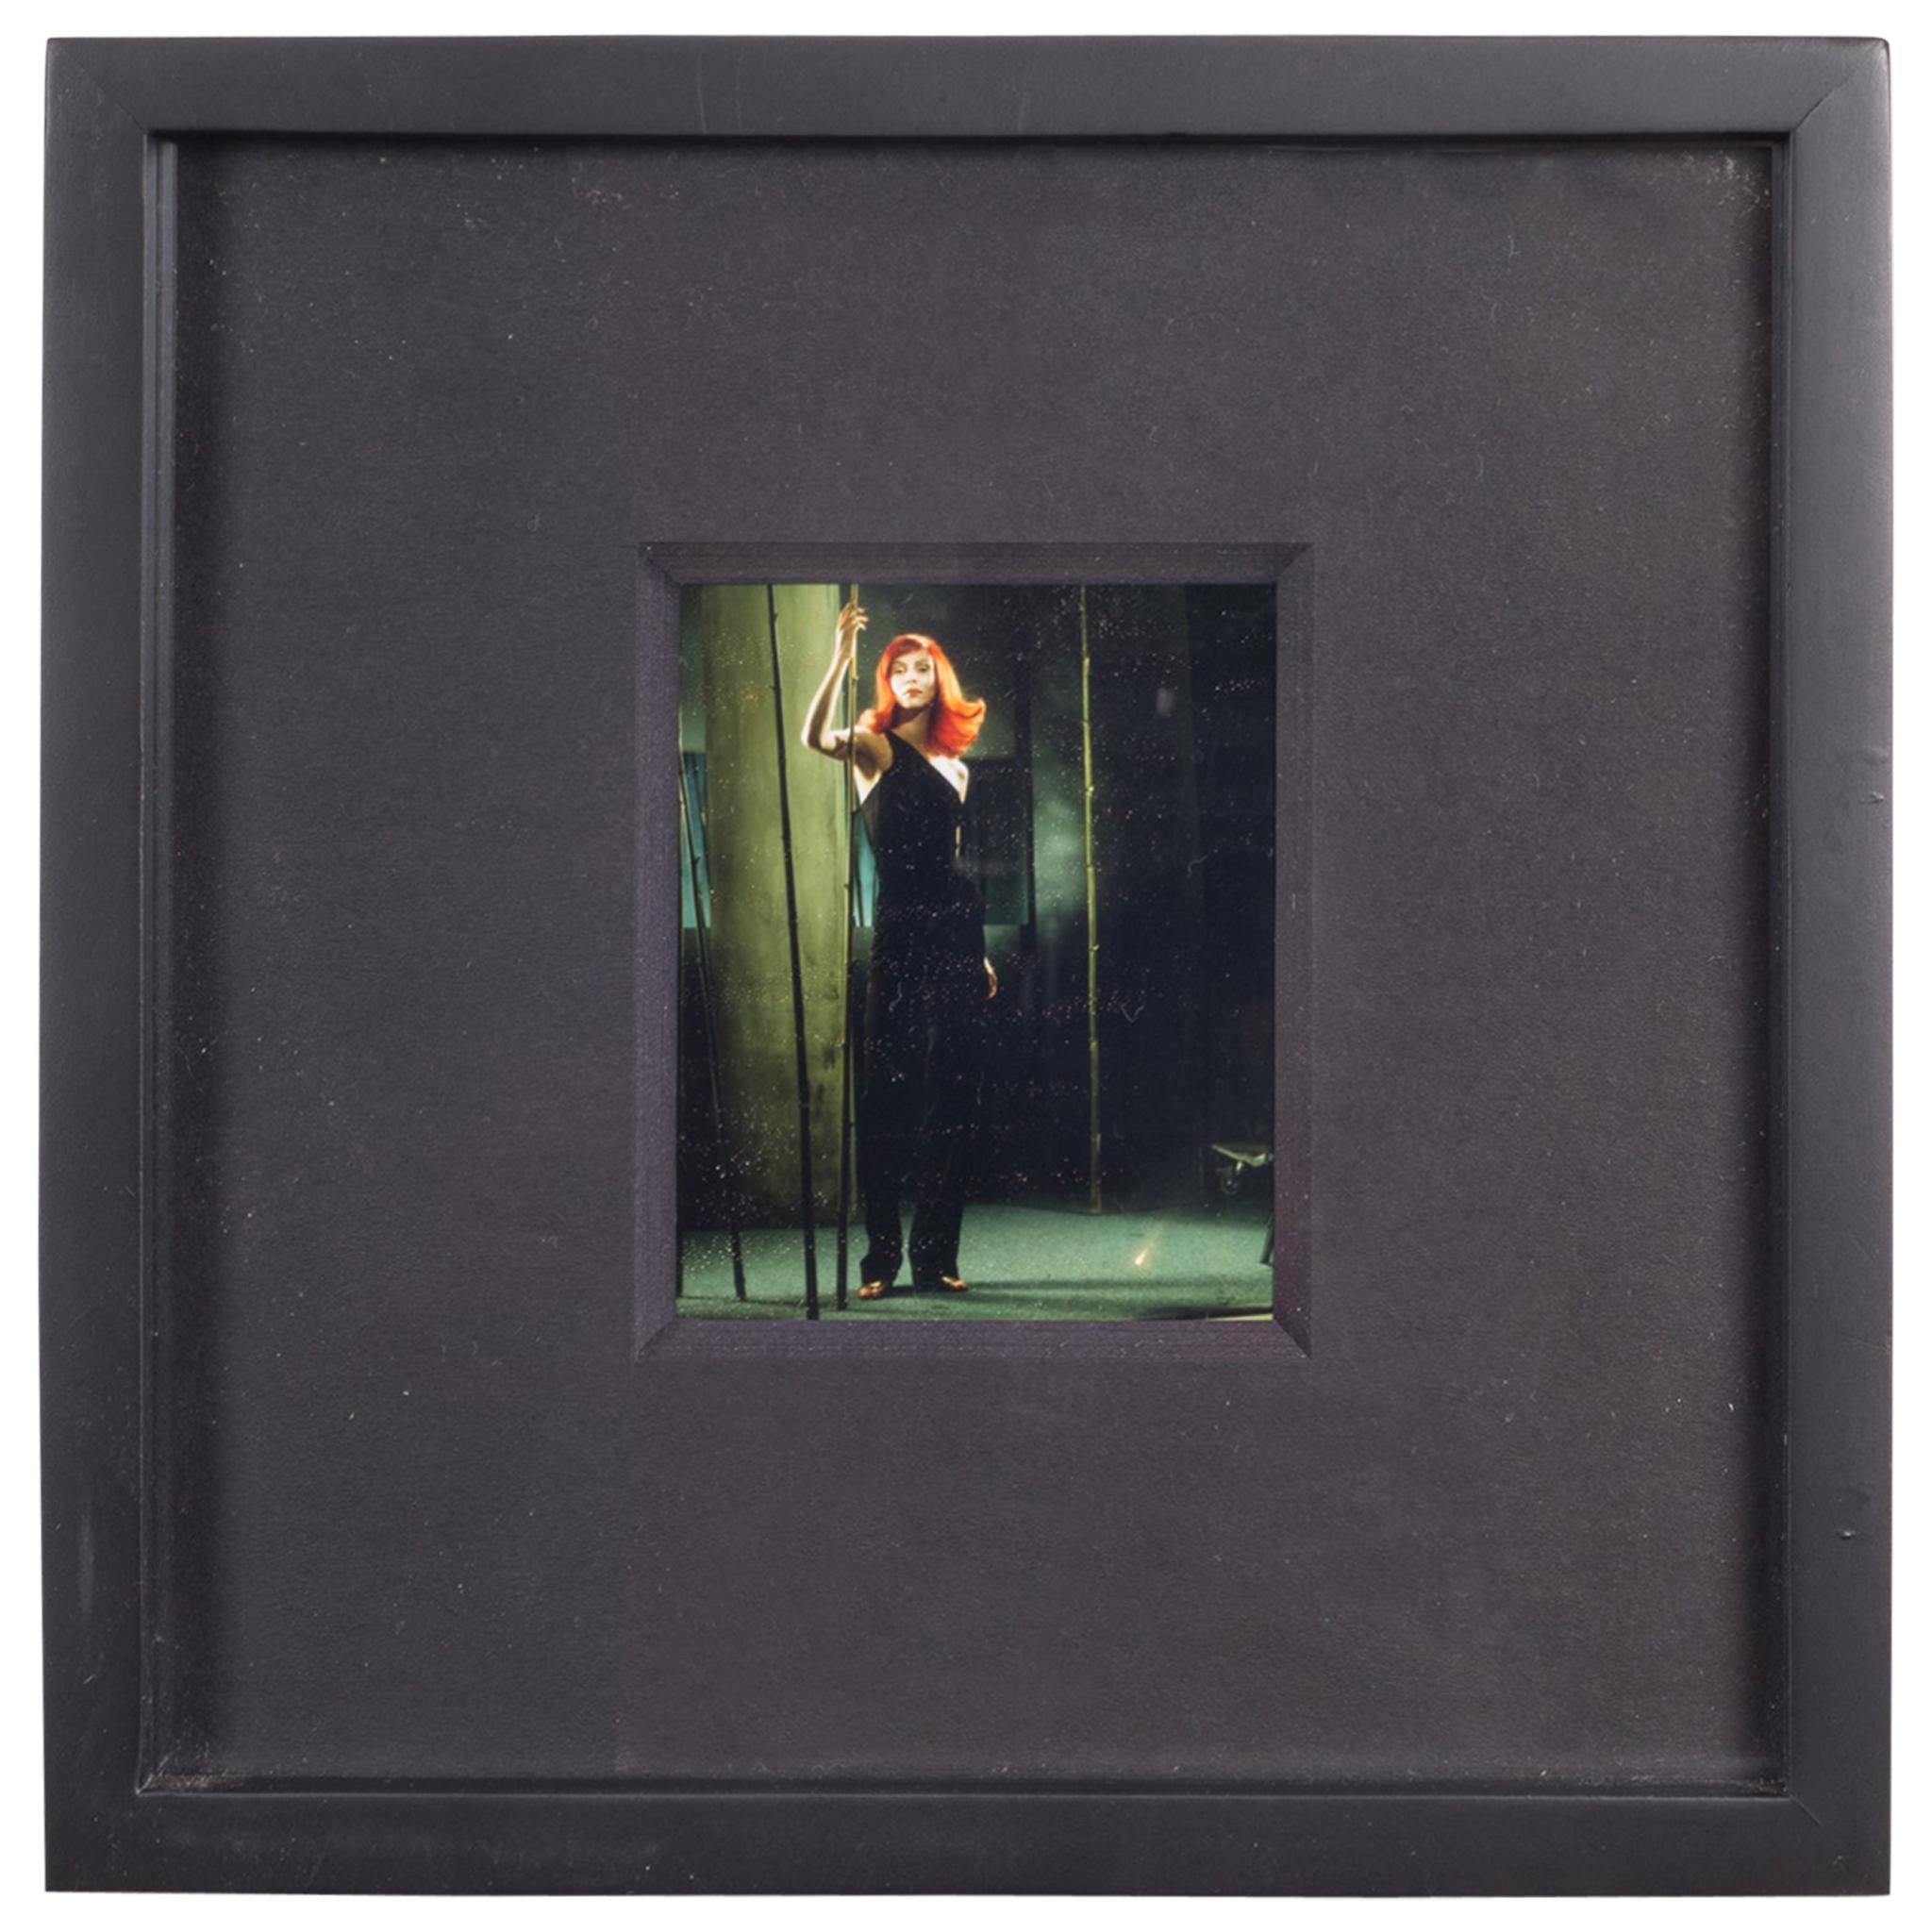 Image de test Polaroid n° 39 de Denise Tarantino pour Dah Len Studios